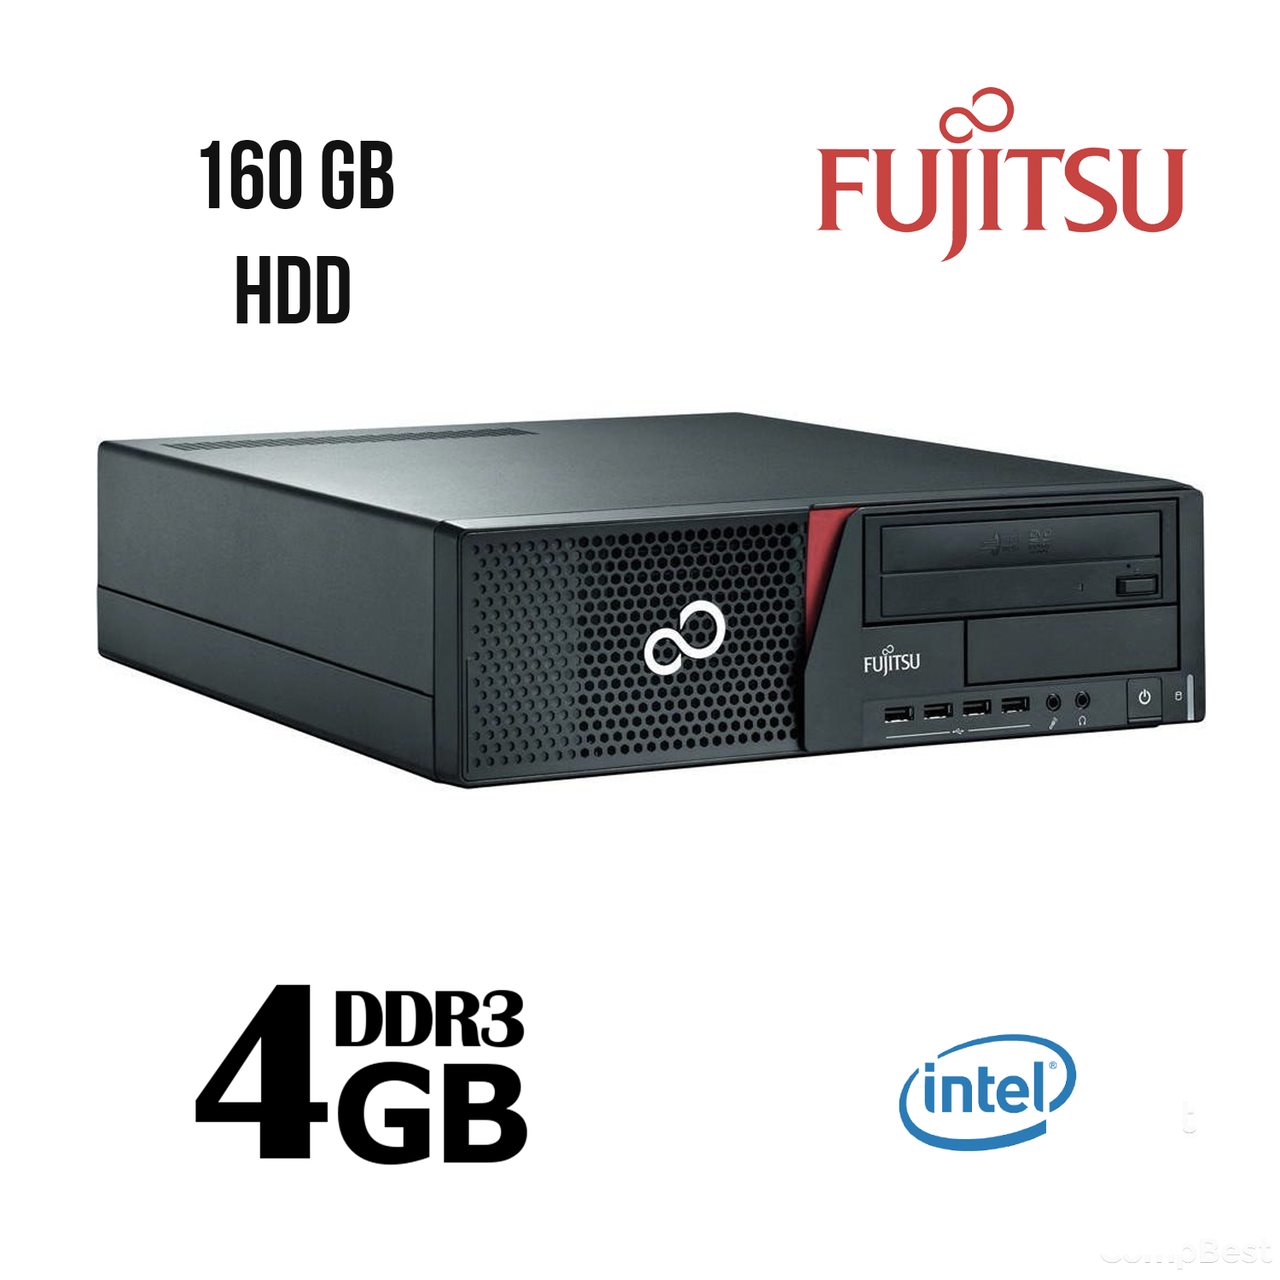 Fujitsu E700 SFF / Intel Pentium G840 (2(2) ядра по 2.8 GHz) / 4 GB DDR3 / 160 GB HDD